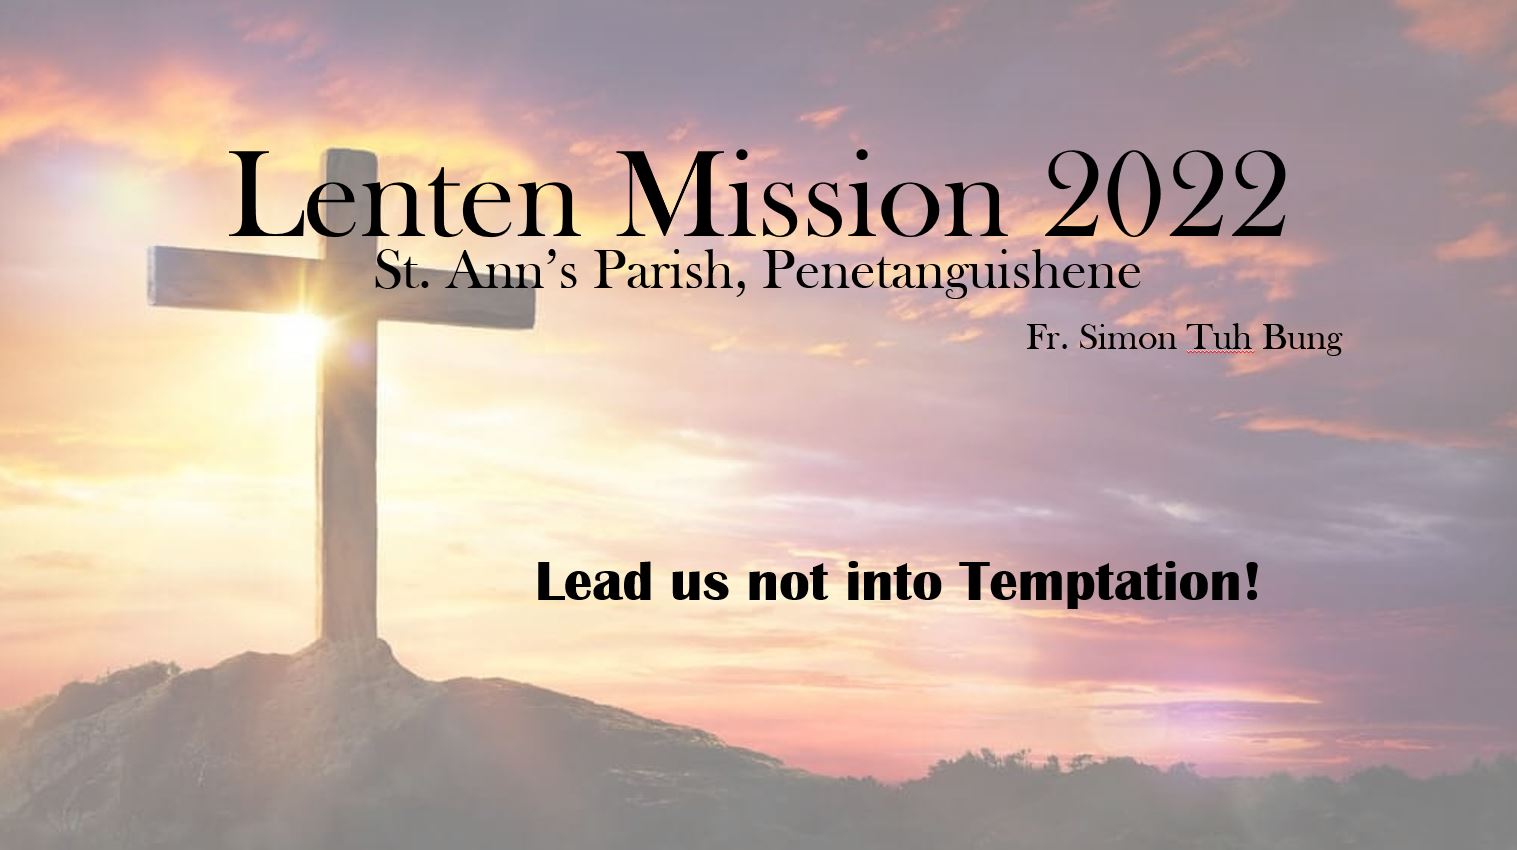 Lenten Mission 2022 - St. Ann's Parish, Penetanguishene Fr. Simon Tuh Bung - Lead us not into Temptation